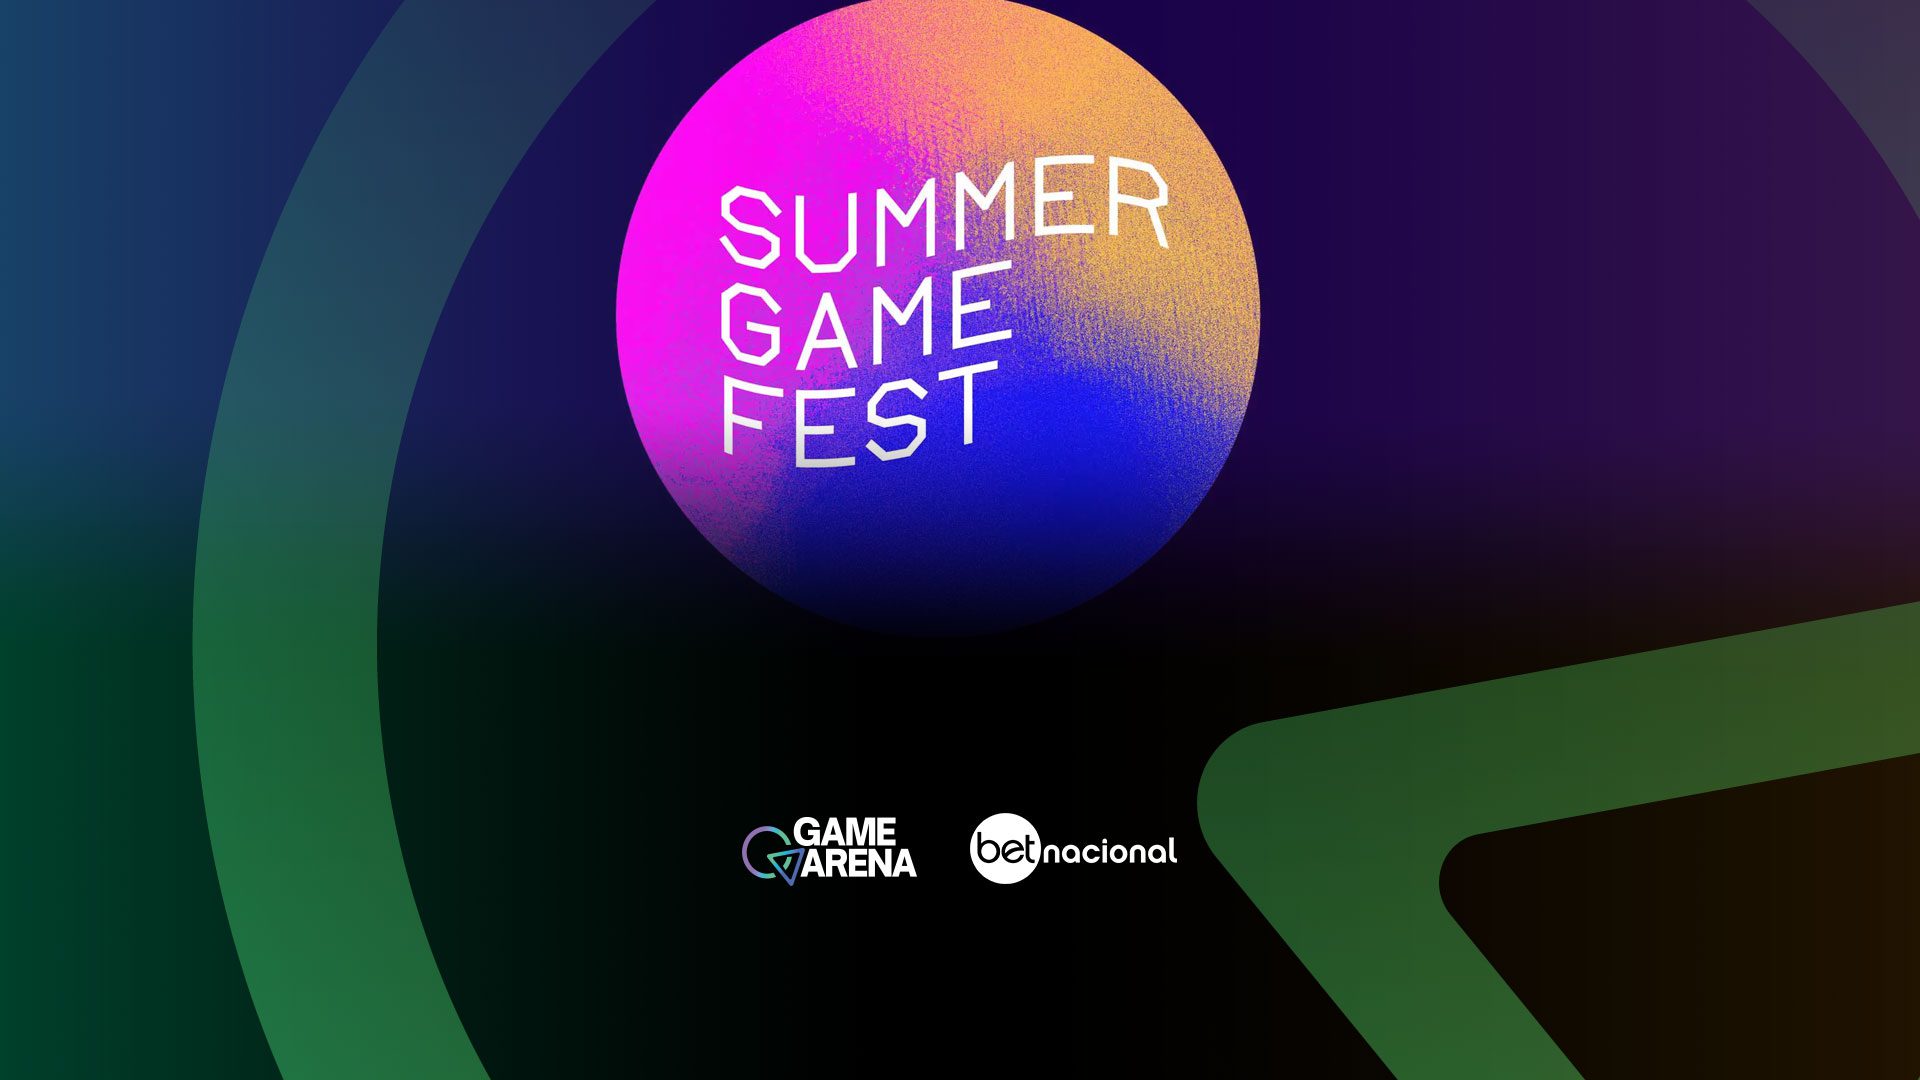 Summer Game Fest evento de abertura terá 2 horas e "grandes anúncios